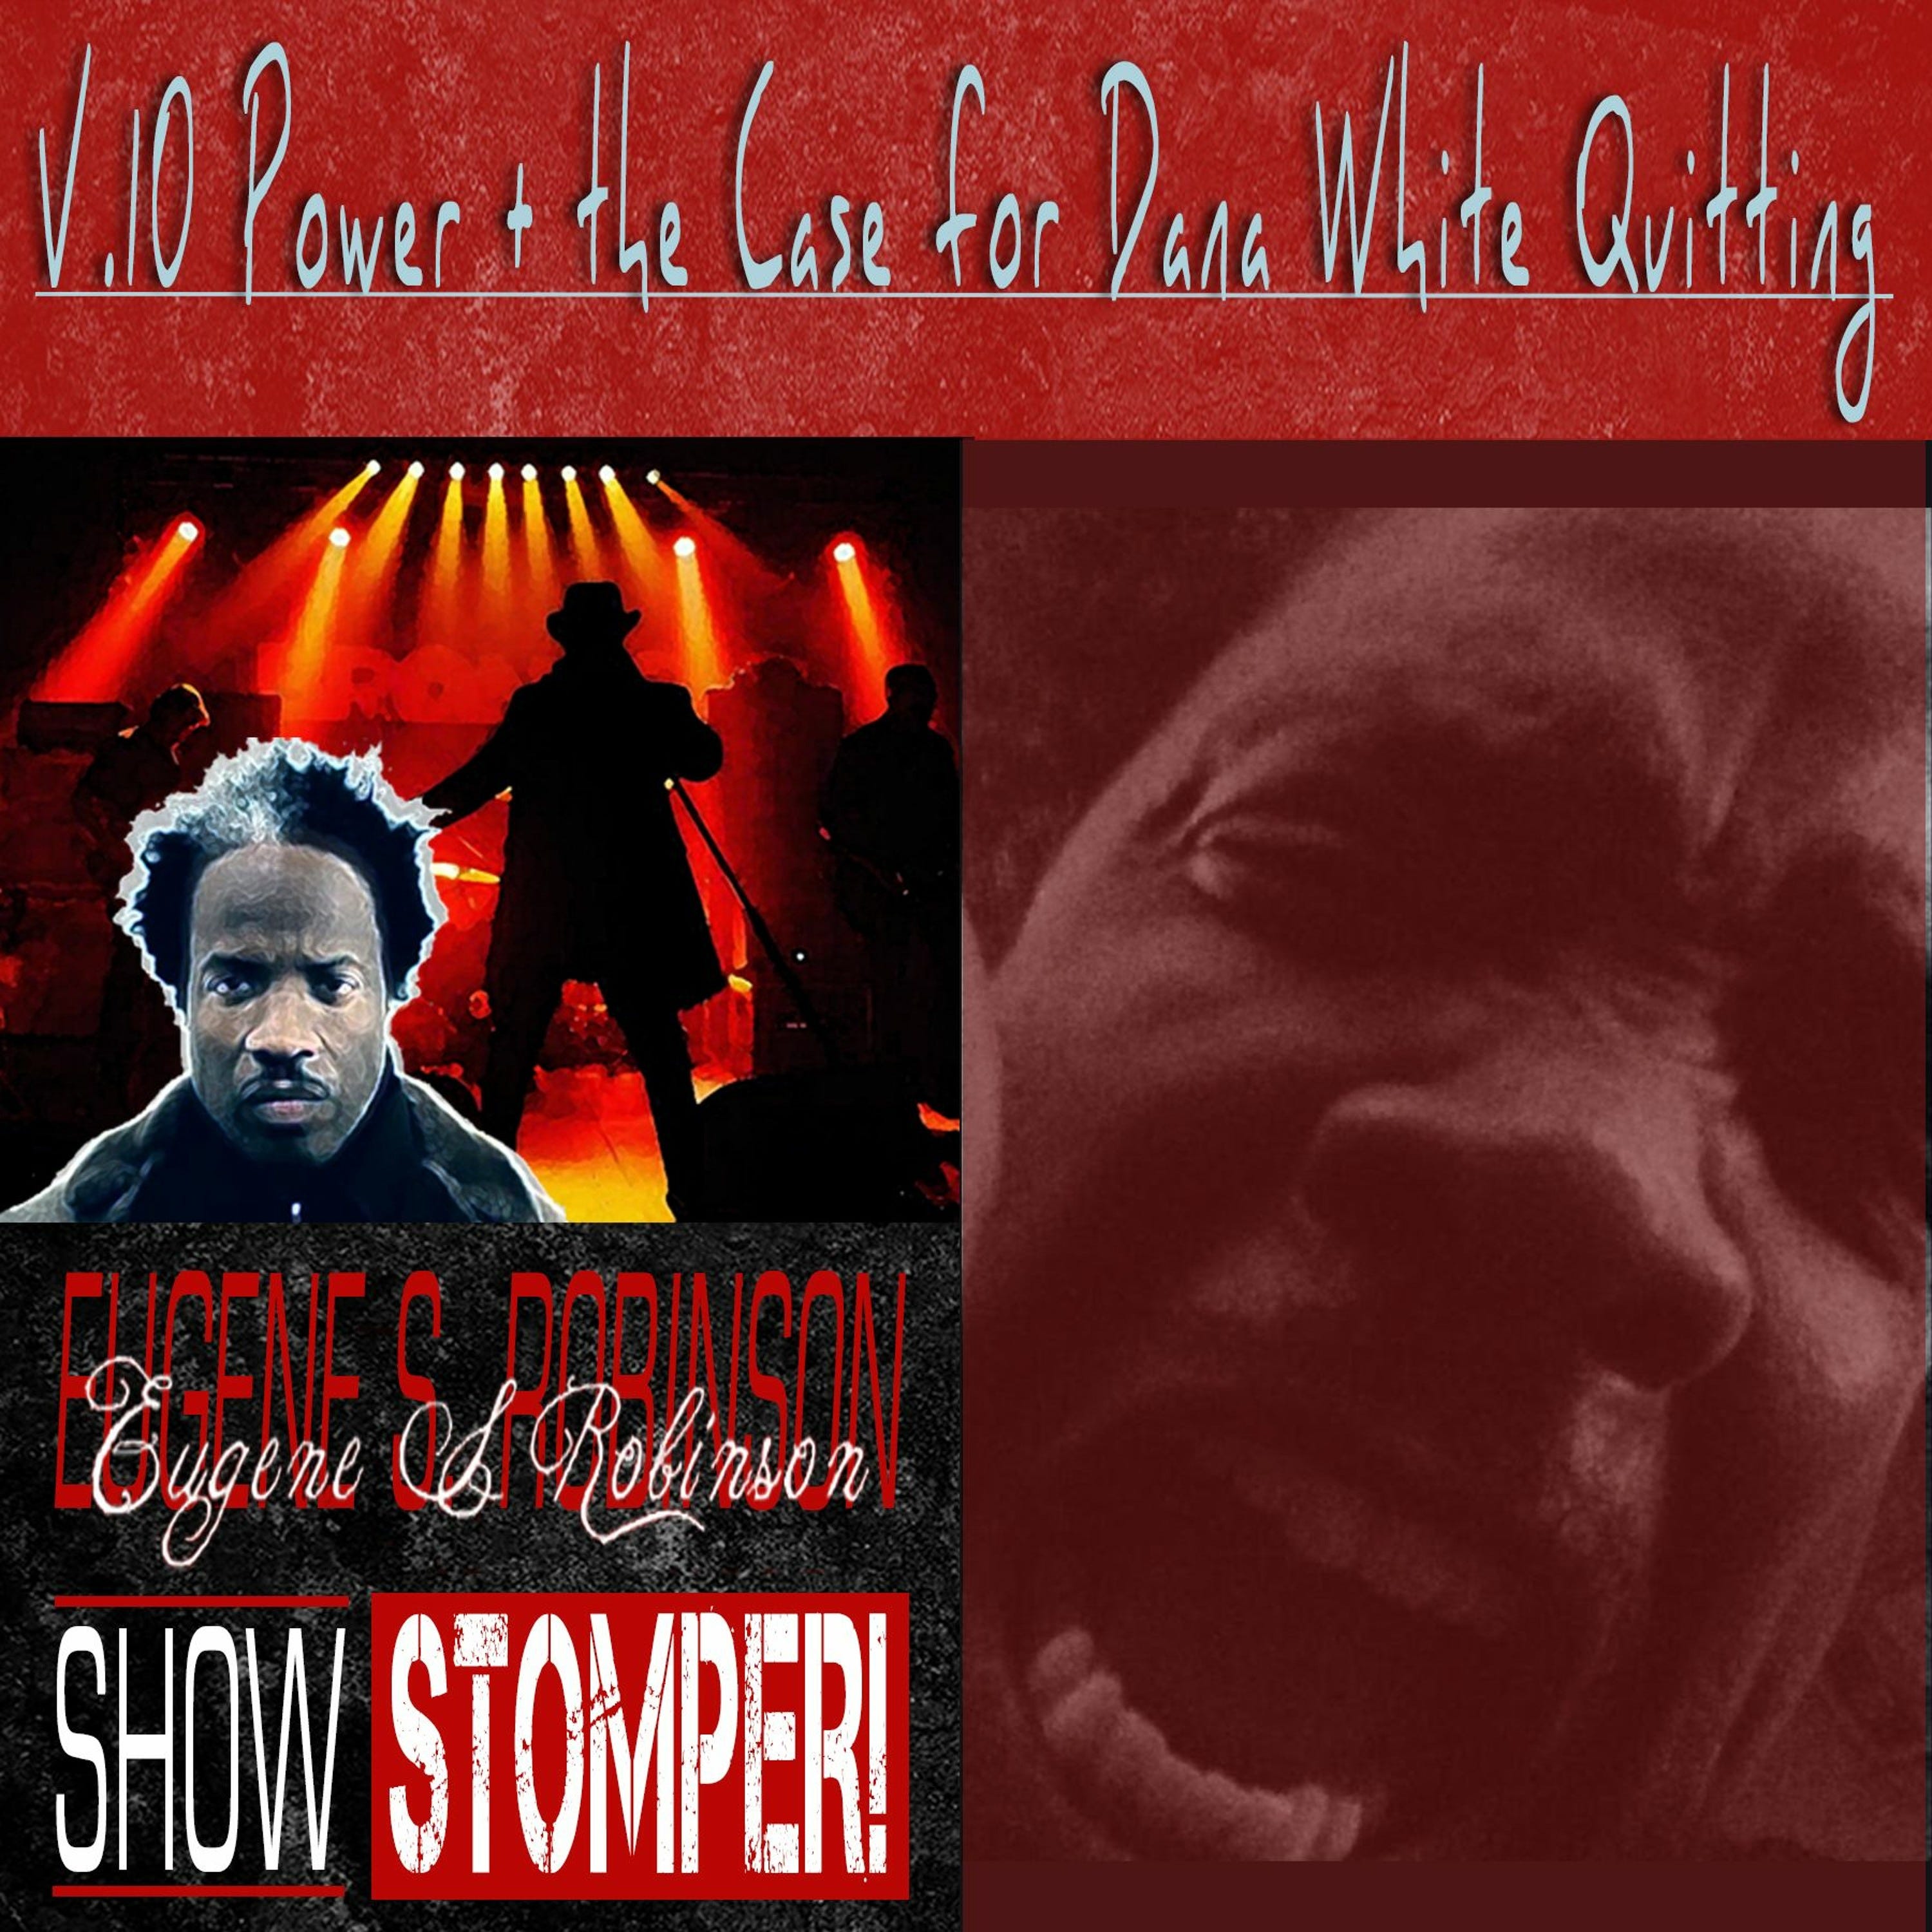 The Eugene S. Robinson Show Stomper! V.10: Power + The Case For Dana White Quitting